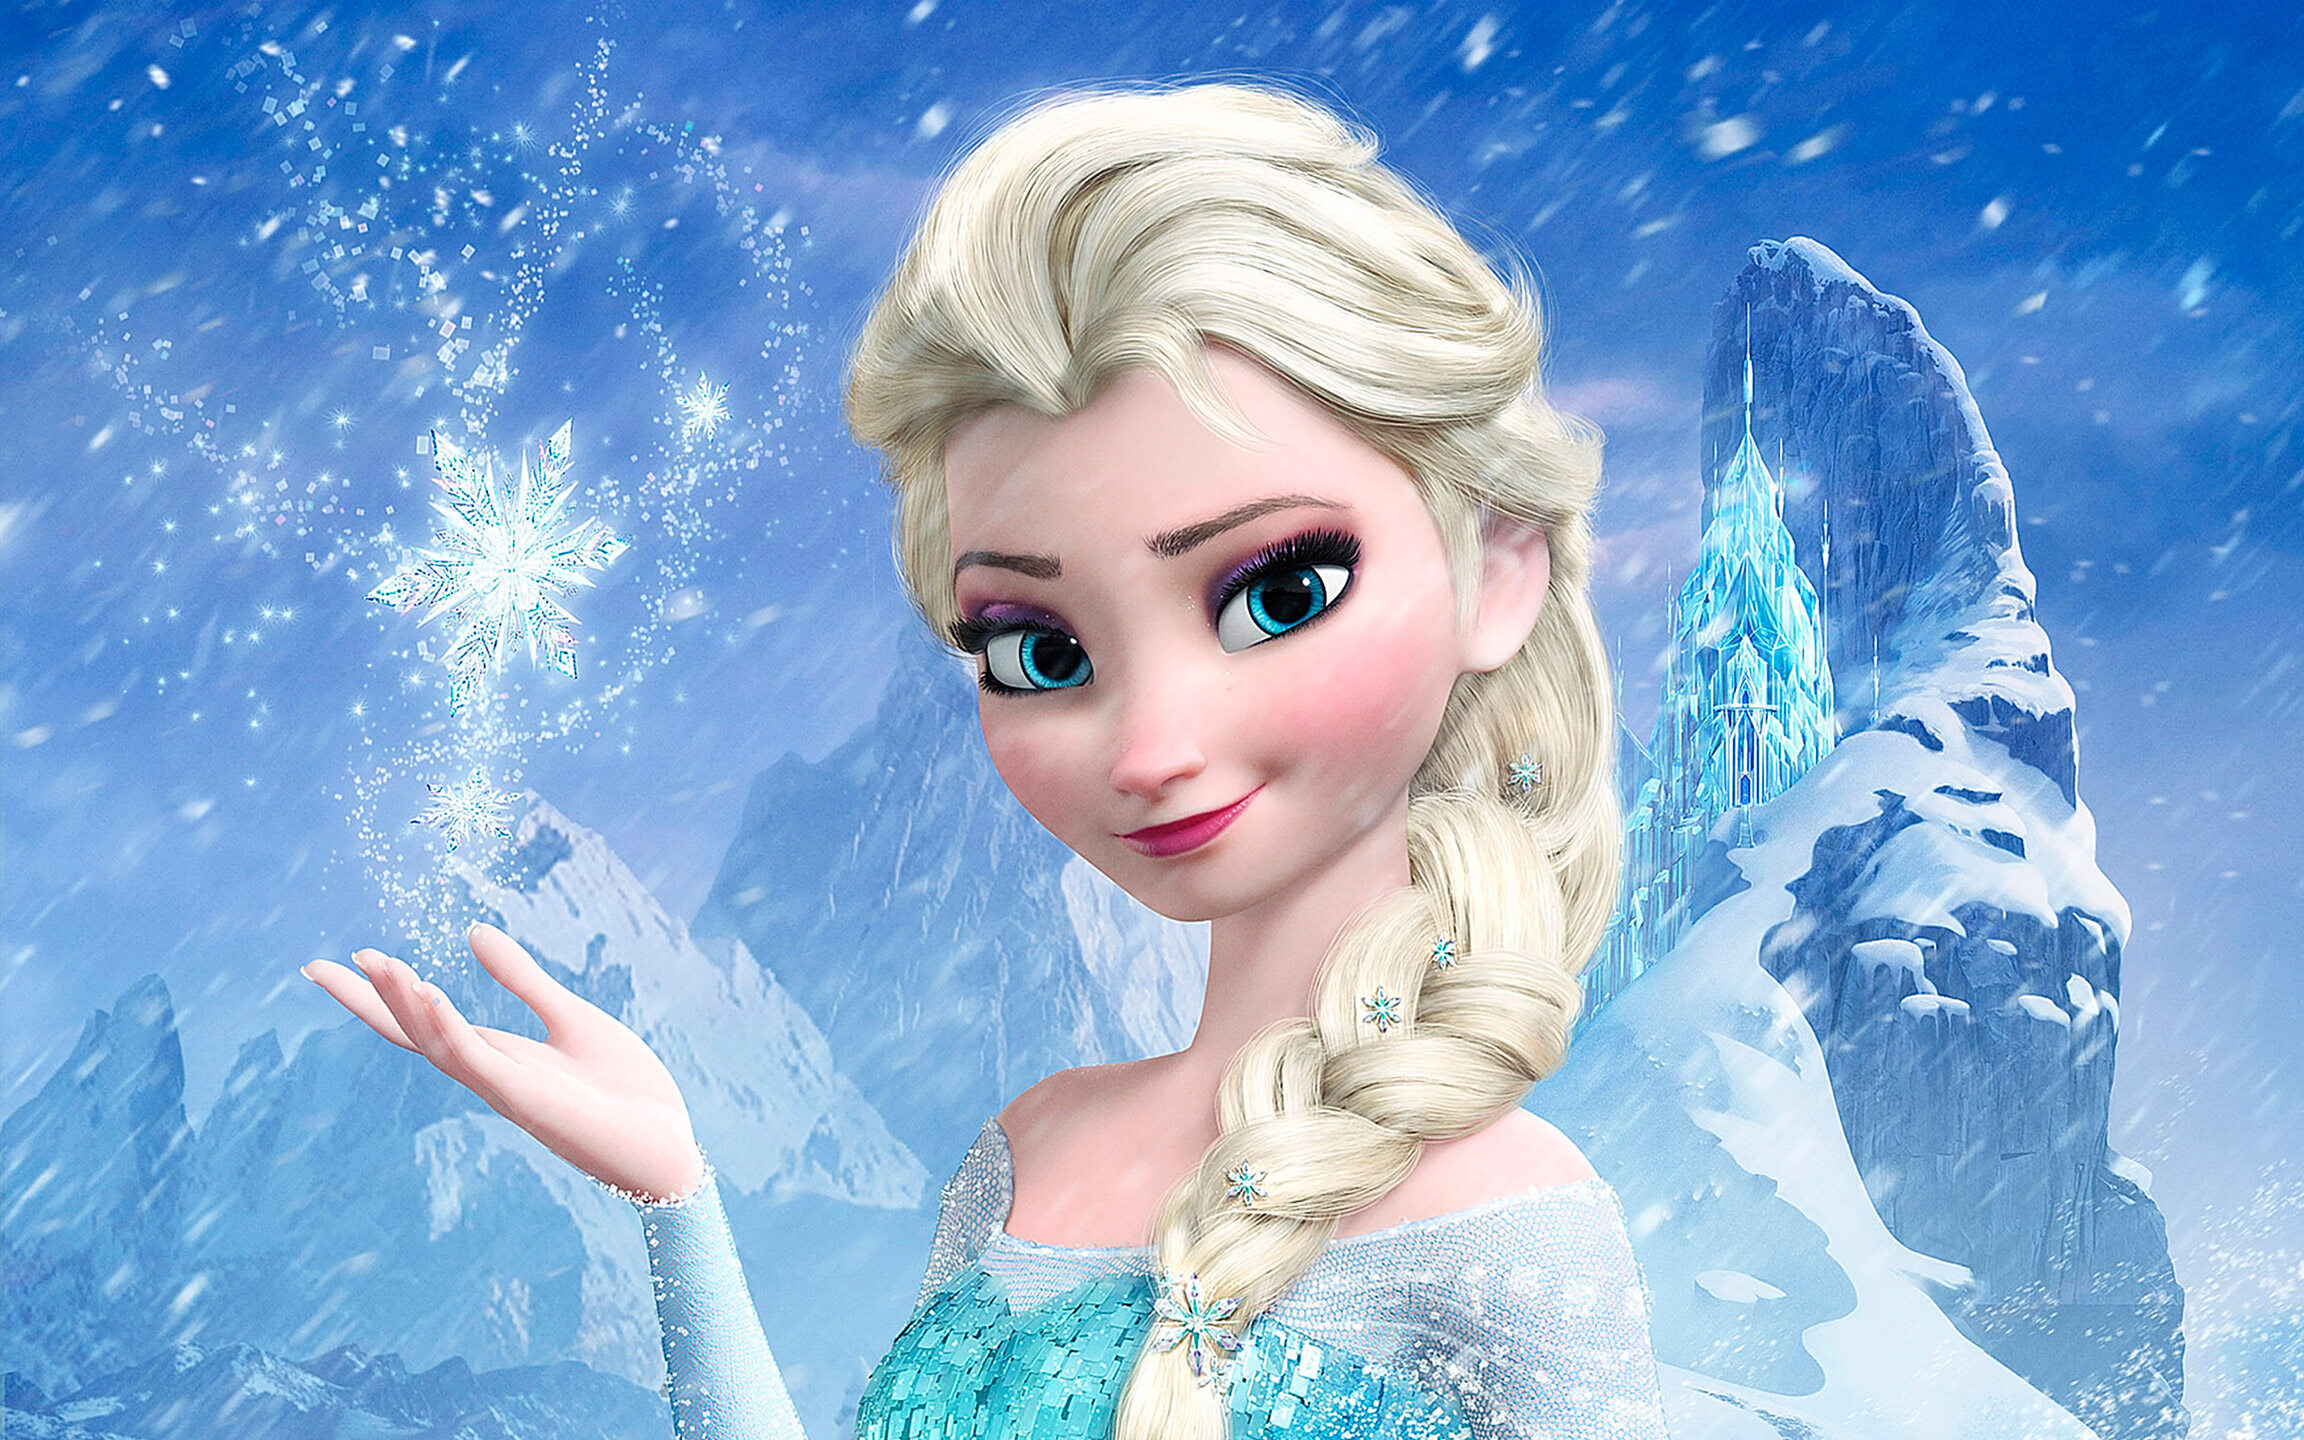 Księżniczka Elsa z "Krainy Lodu / Frozen" (2013)